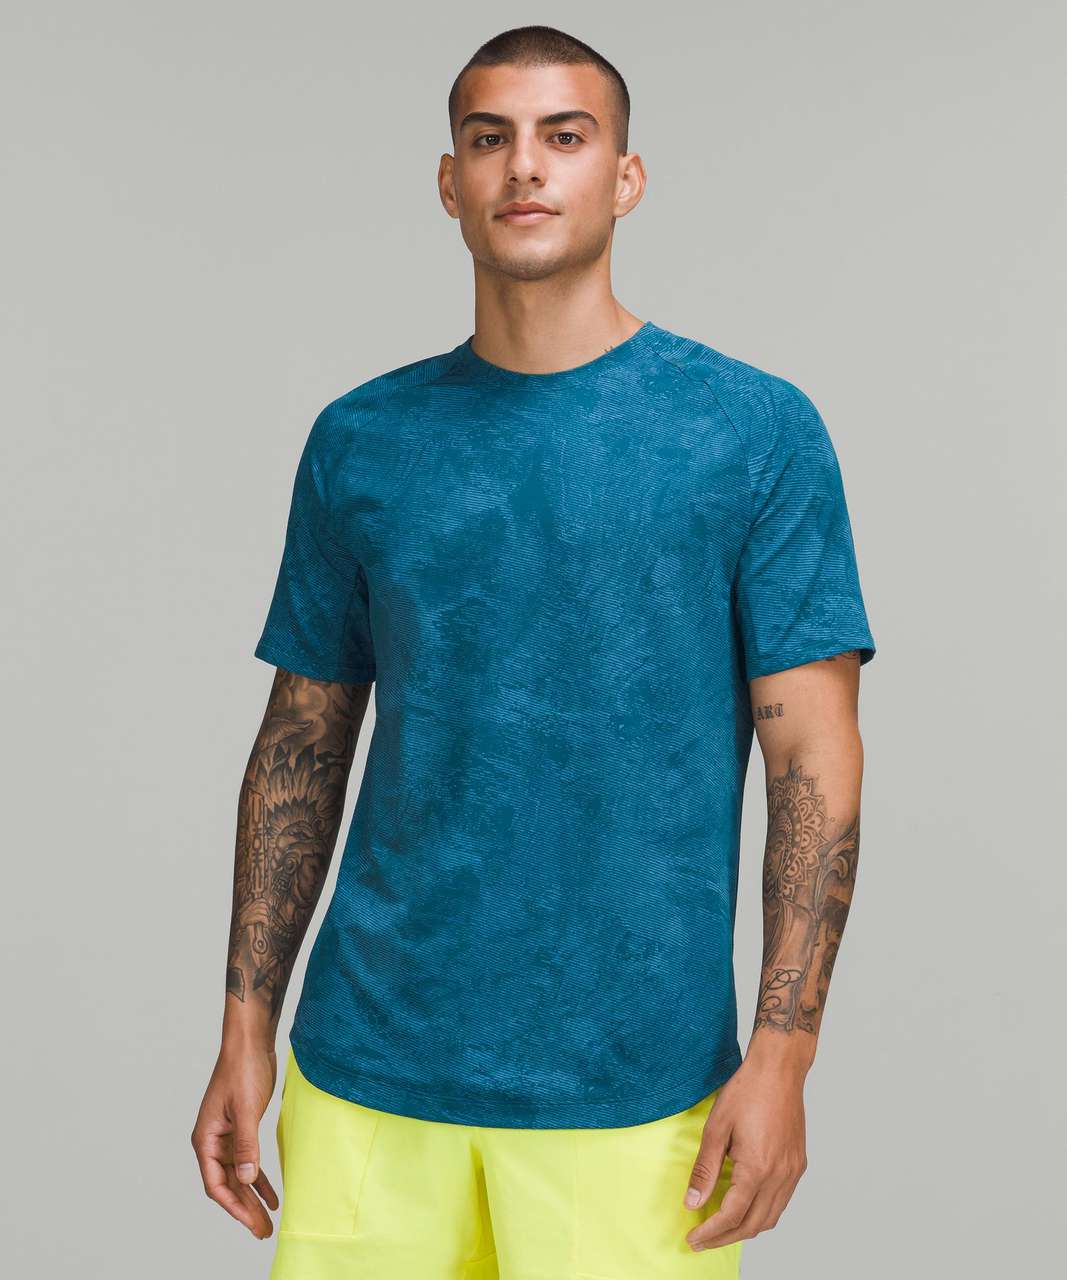 Lululemon Drysense Training Short Sleeve Shirt - Marble Map Jacquard Blue Borealis Soft Denim